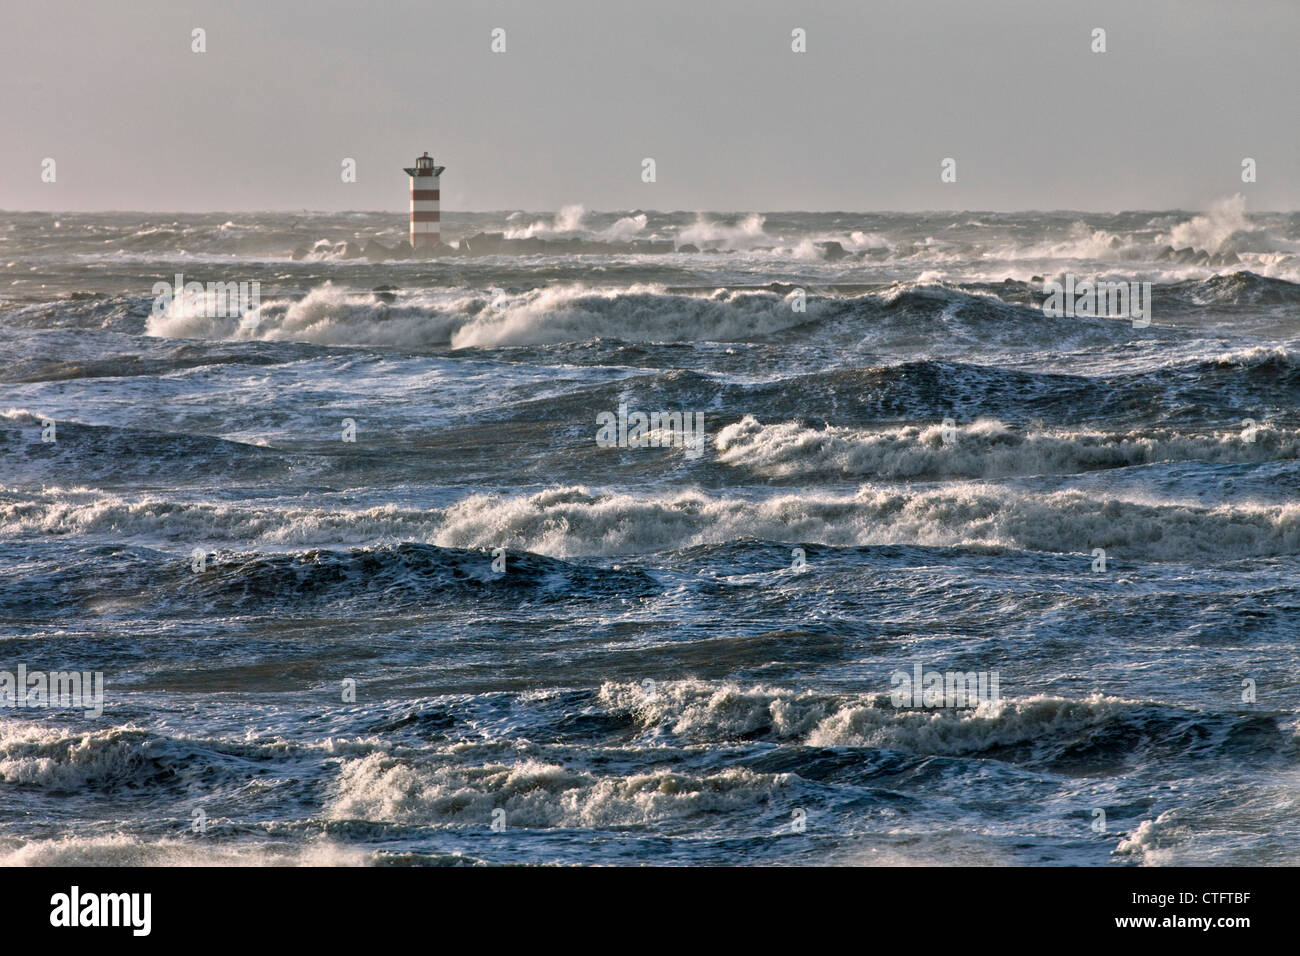 Los Países Bajos IJmuiden, Tormenta. Las olas chocan contra el faro o baliza. Foto de stock